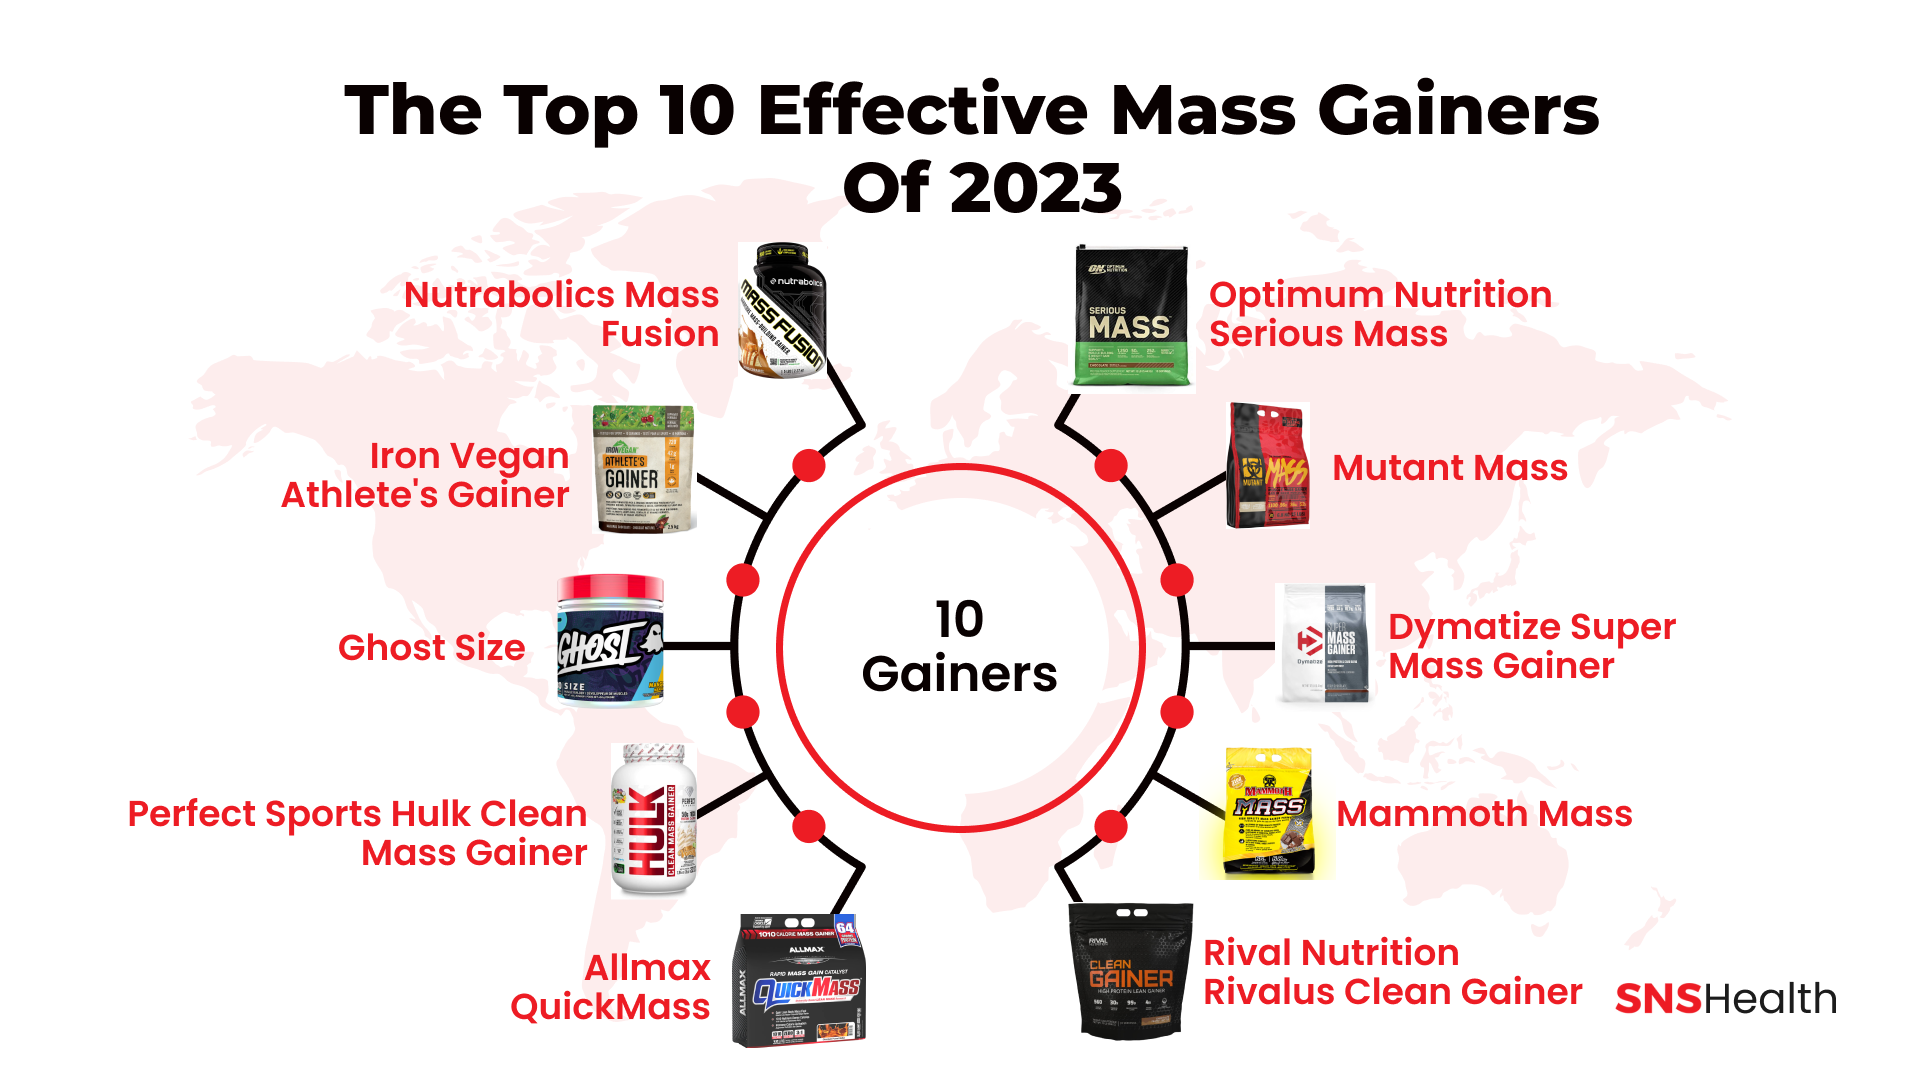 Die 10 effektivsten Mass Gainer des Jahres 2023